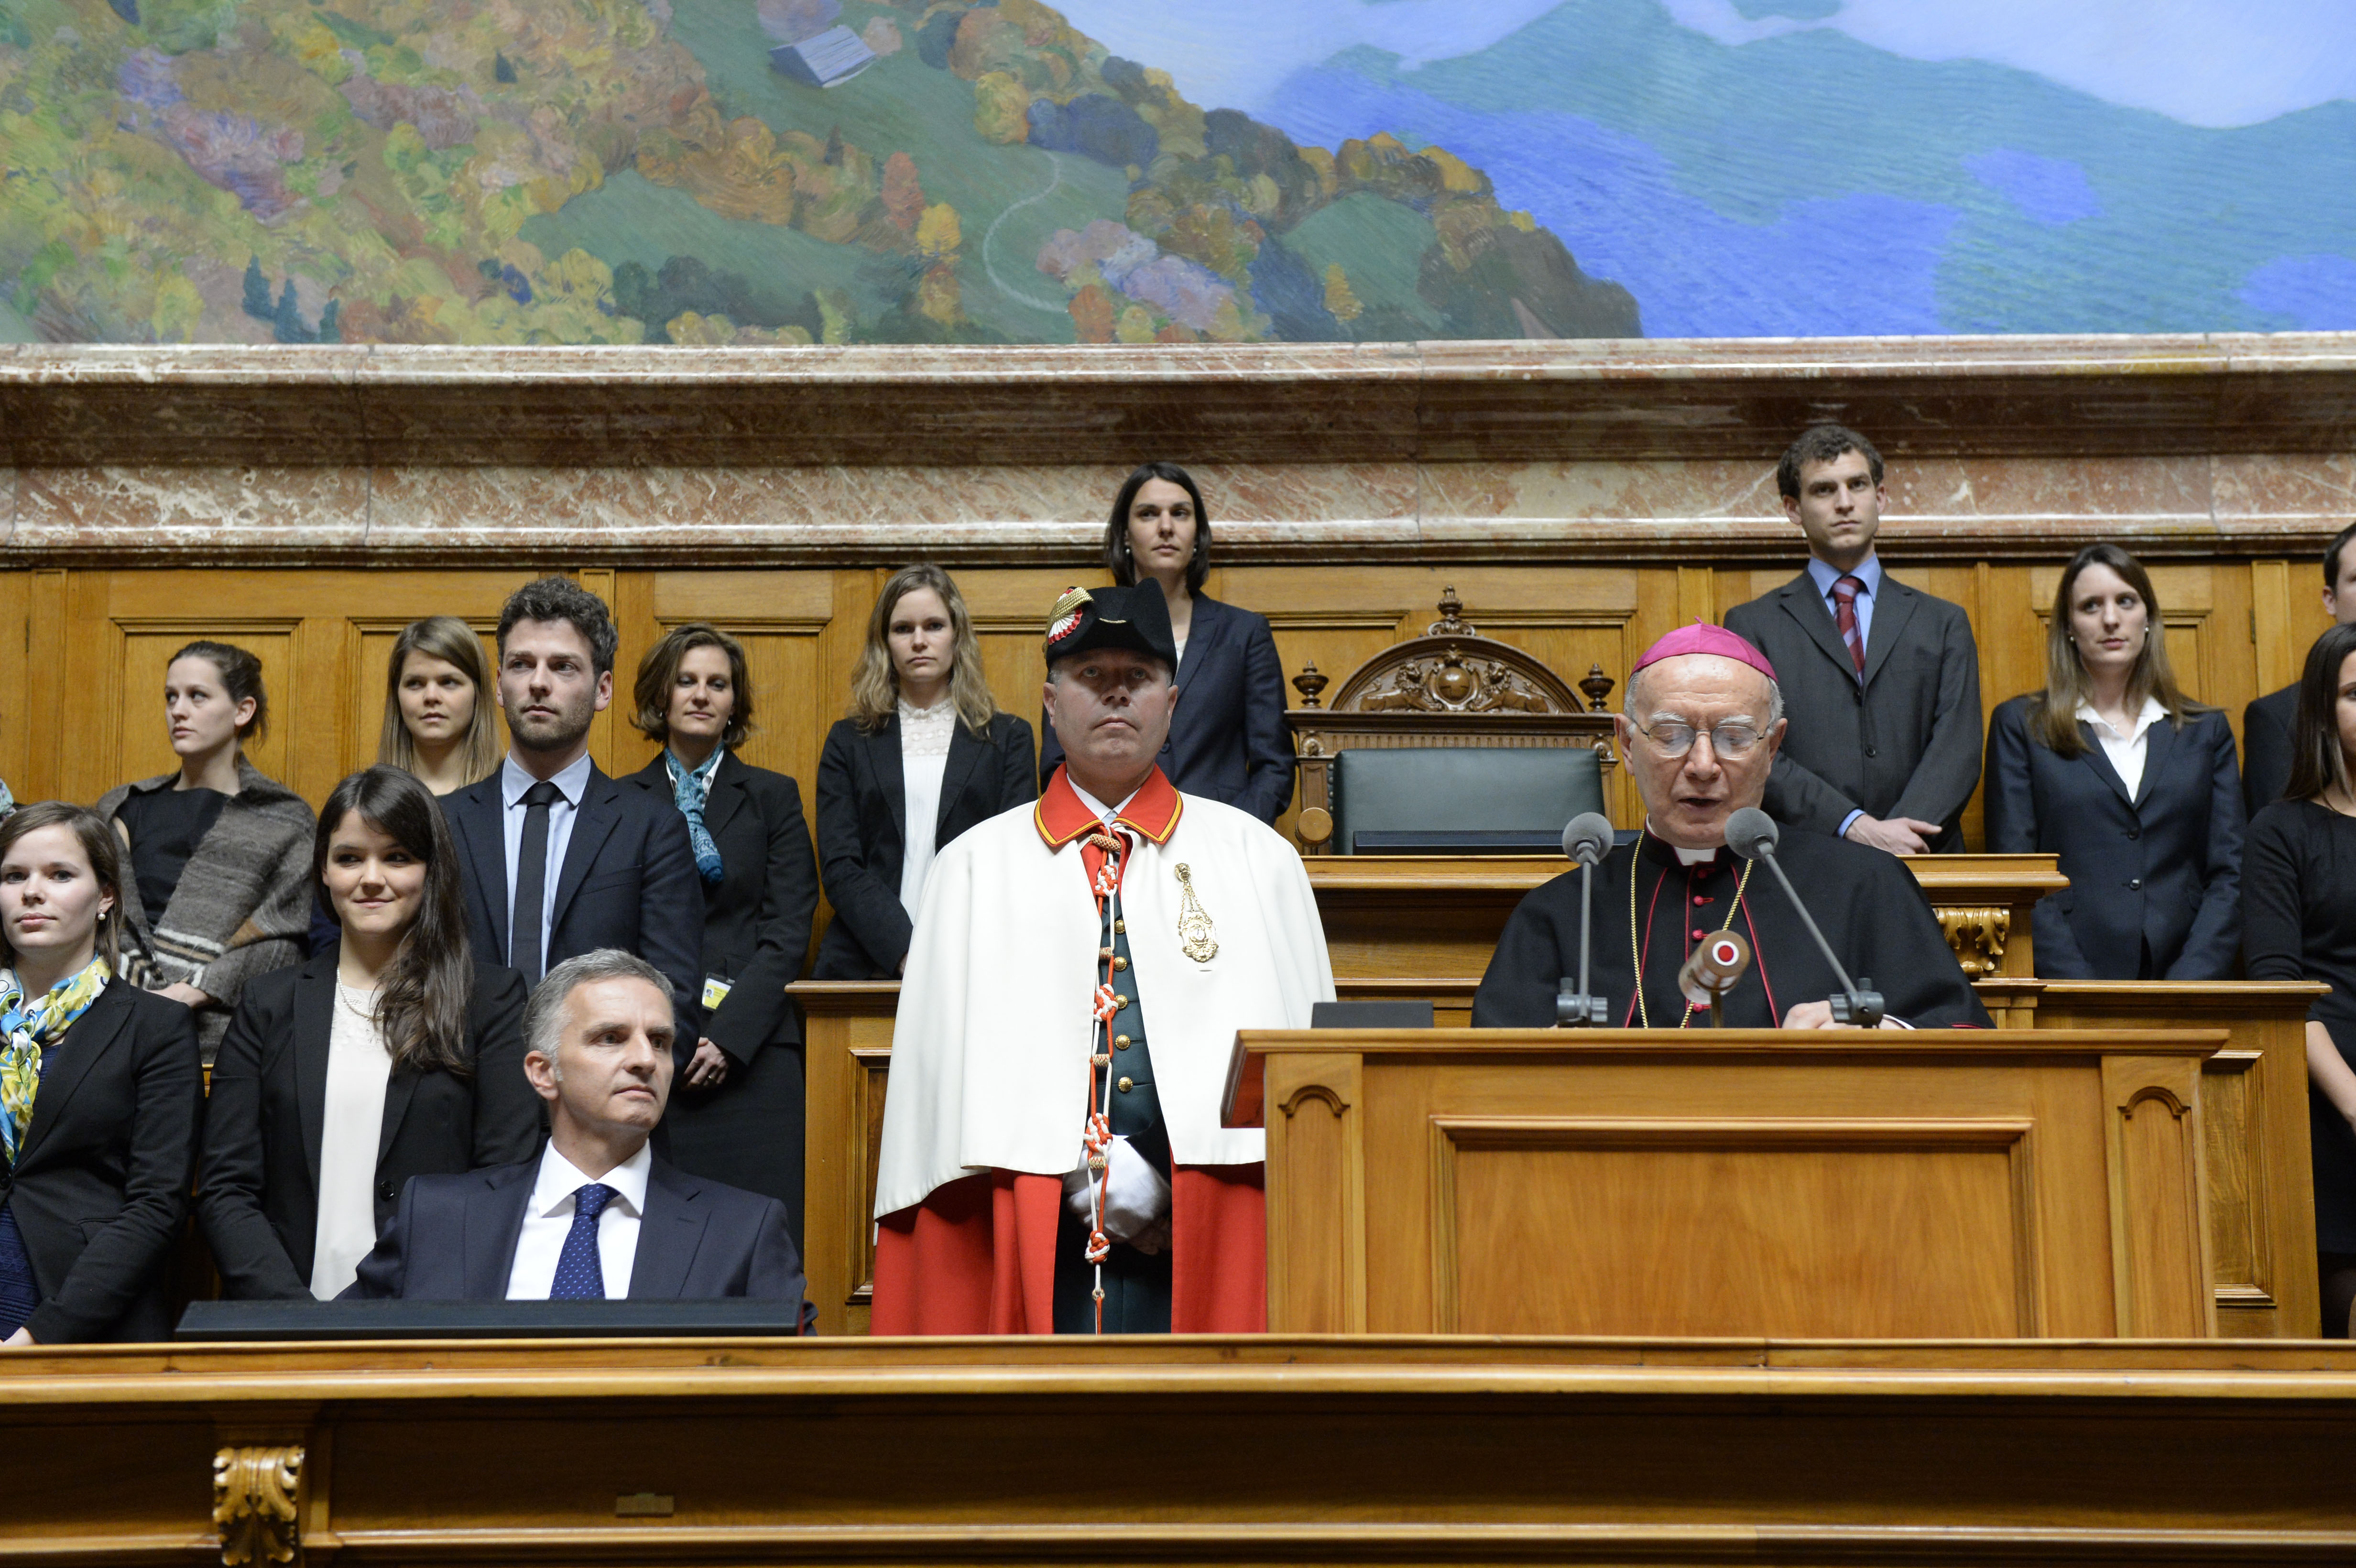 Umgeben von jungen Diplomaten spricht der päpstliche Nuntius zum diplomatischen Corps.